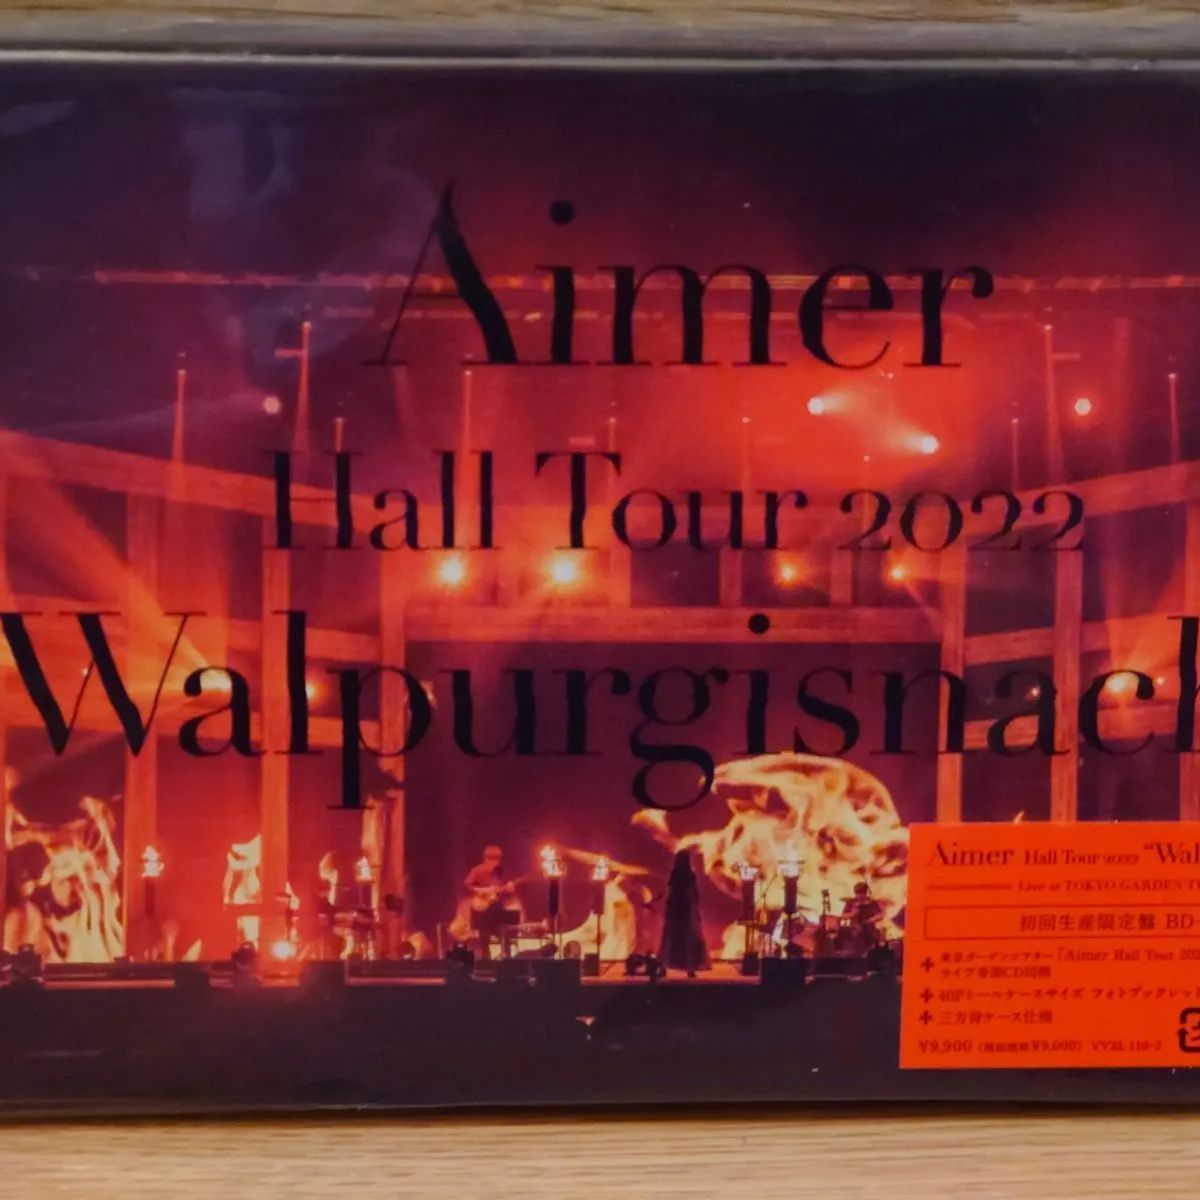 Aimer Hall Tour 2022 